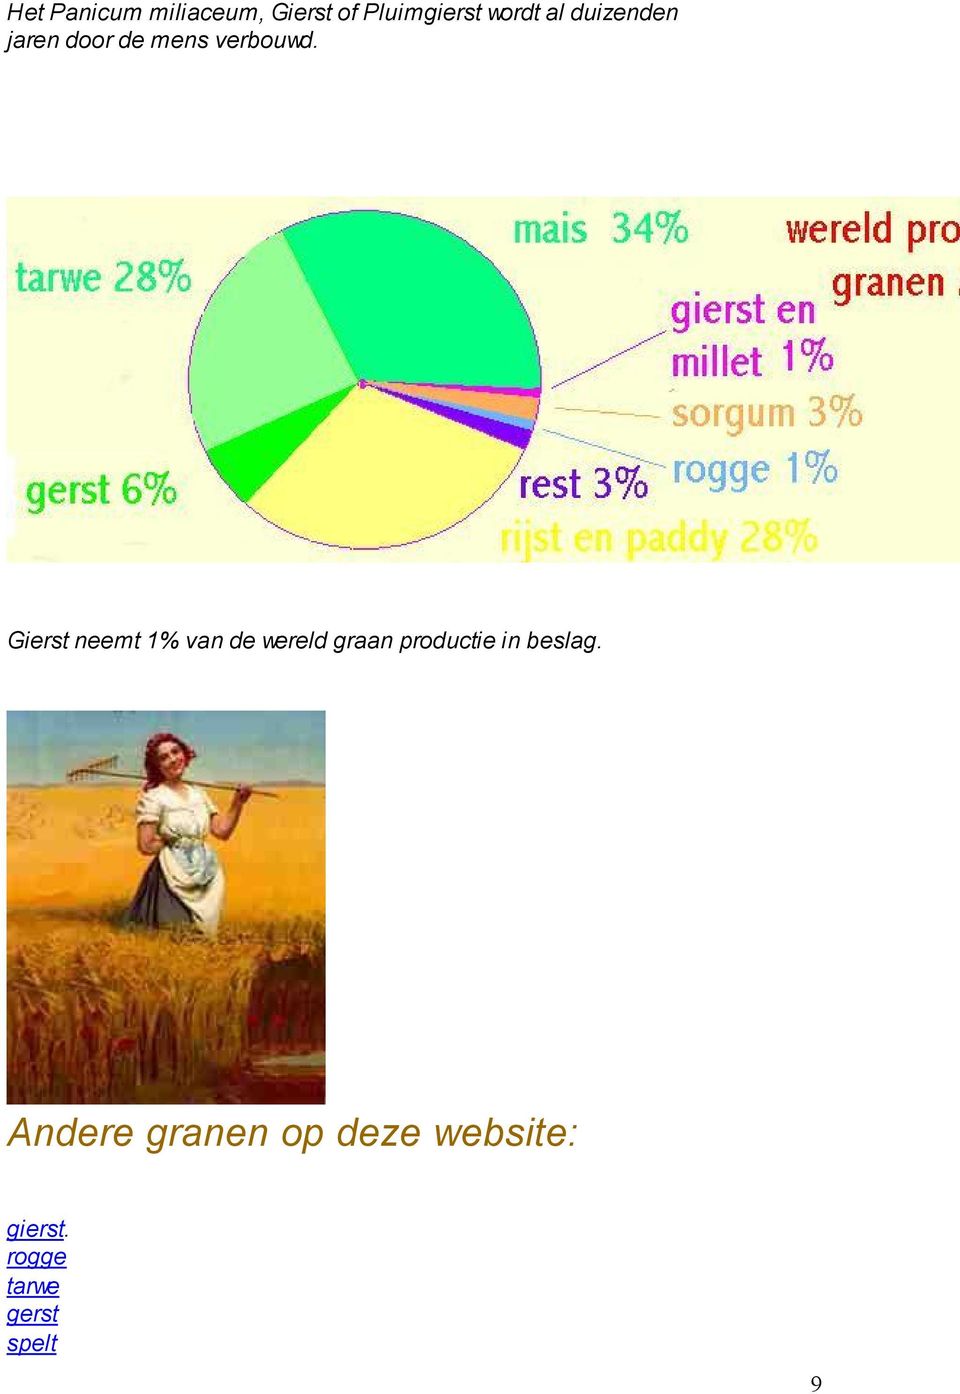 Gierst neemt 1% van de wereld graan productie in